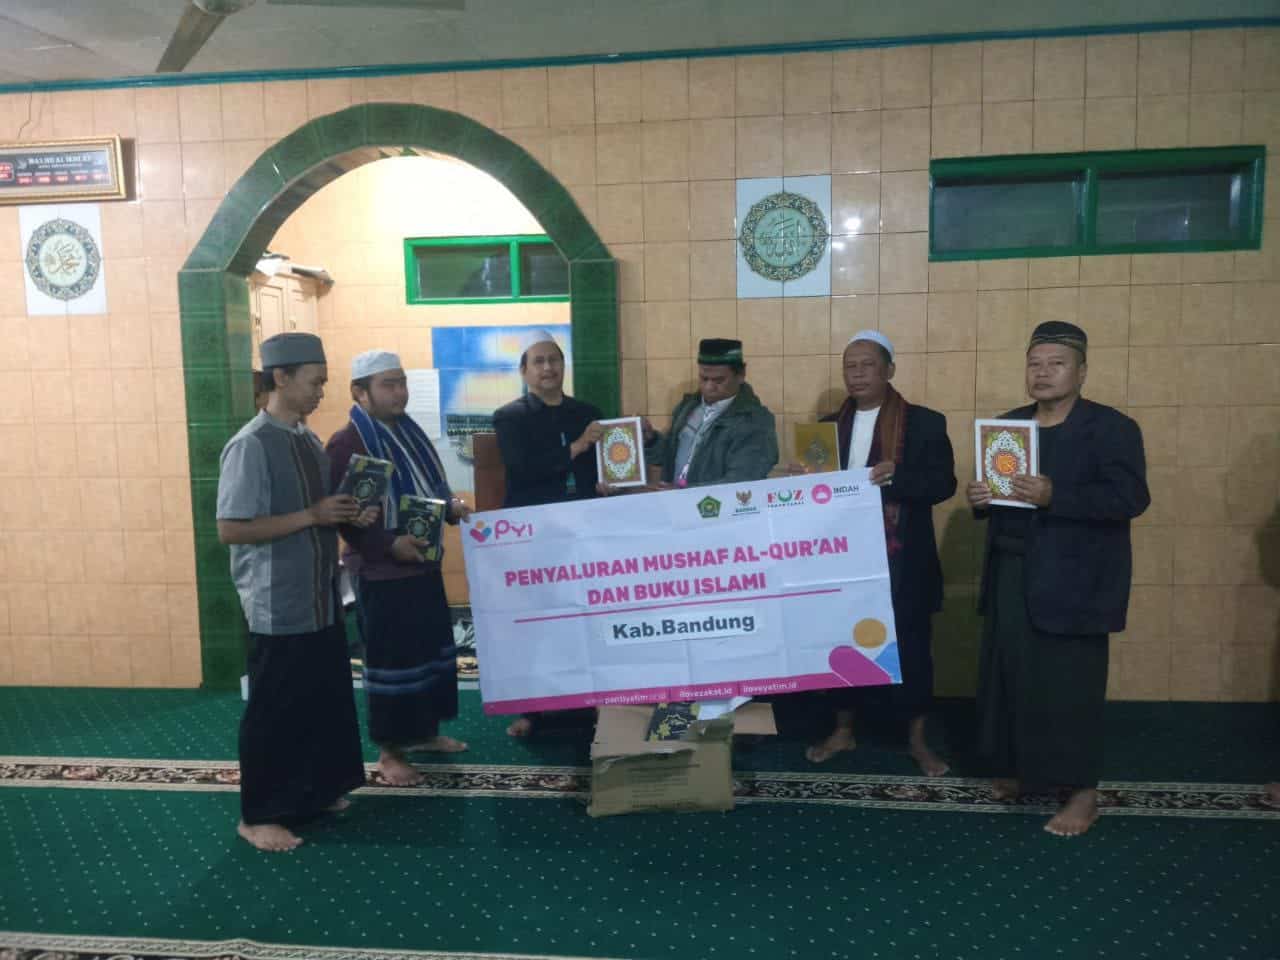 Laznas Panti Yatim Salurkan Bantuan Dakwah berupa Al Quran dan Buku Islami di Kopo Kec. Kutawaringin